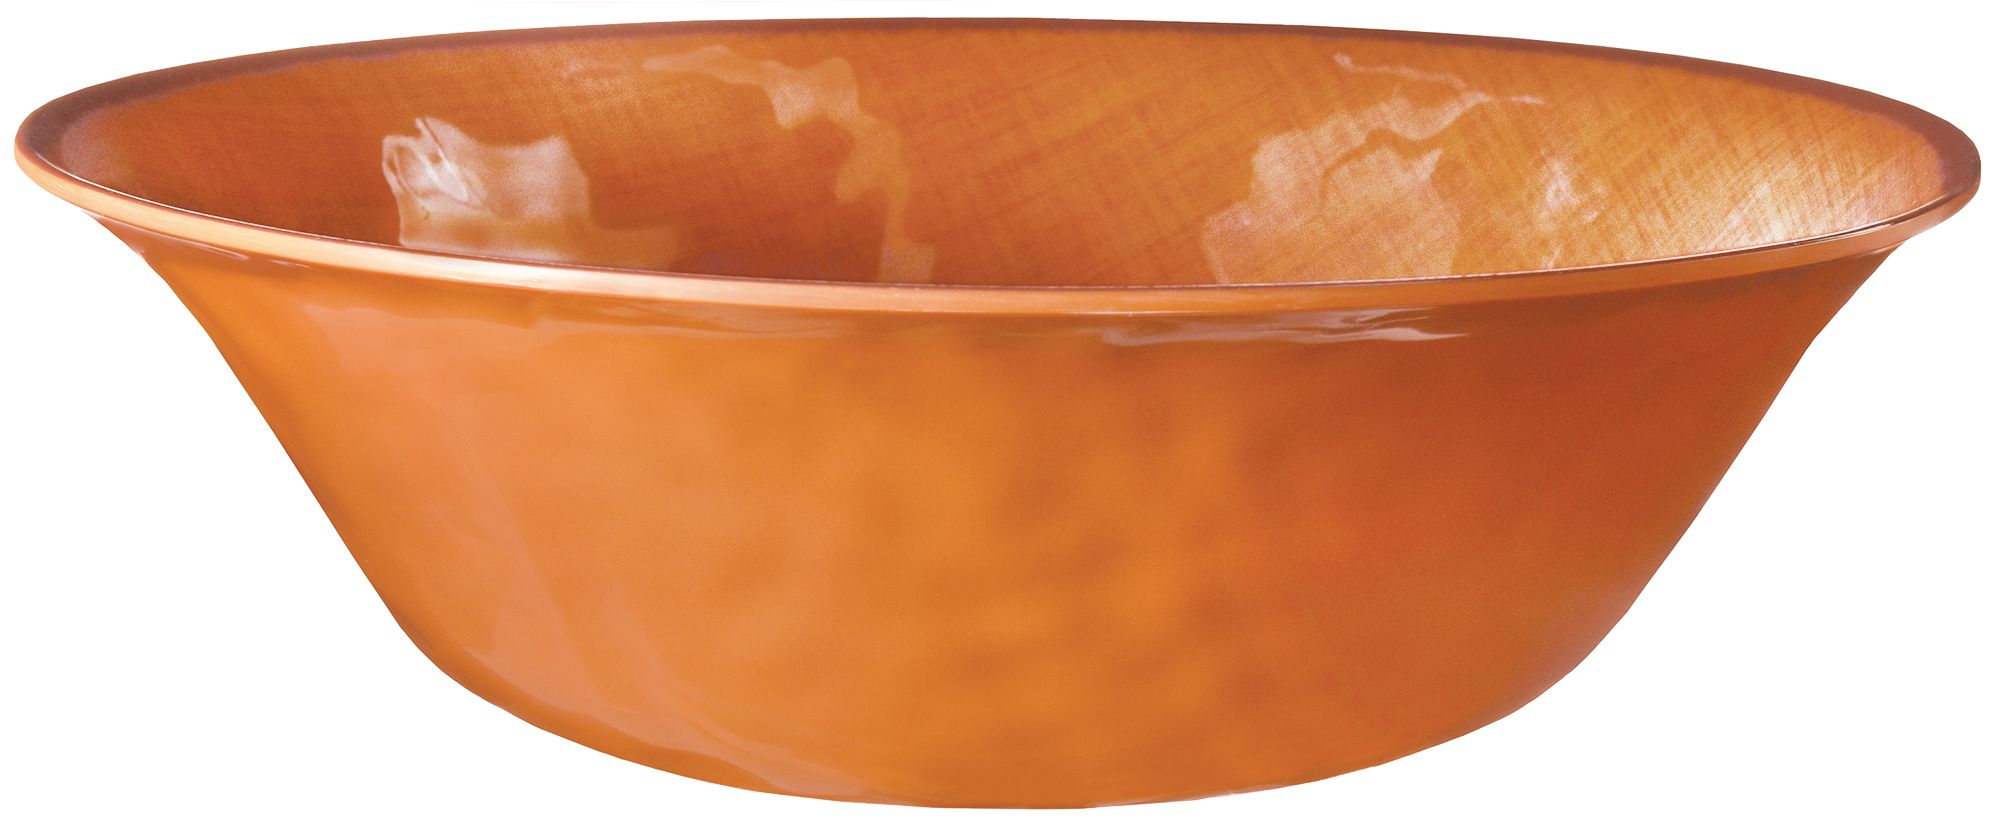 Élégant bol de service en plastique texturé réutilisable, orange, 1-G,  décoration de table pour l'automne